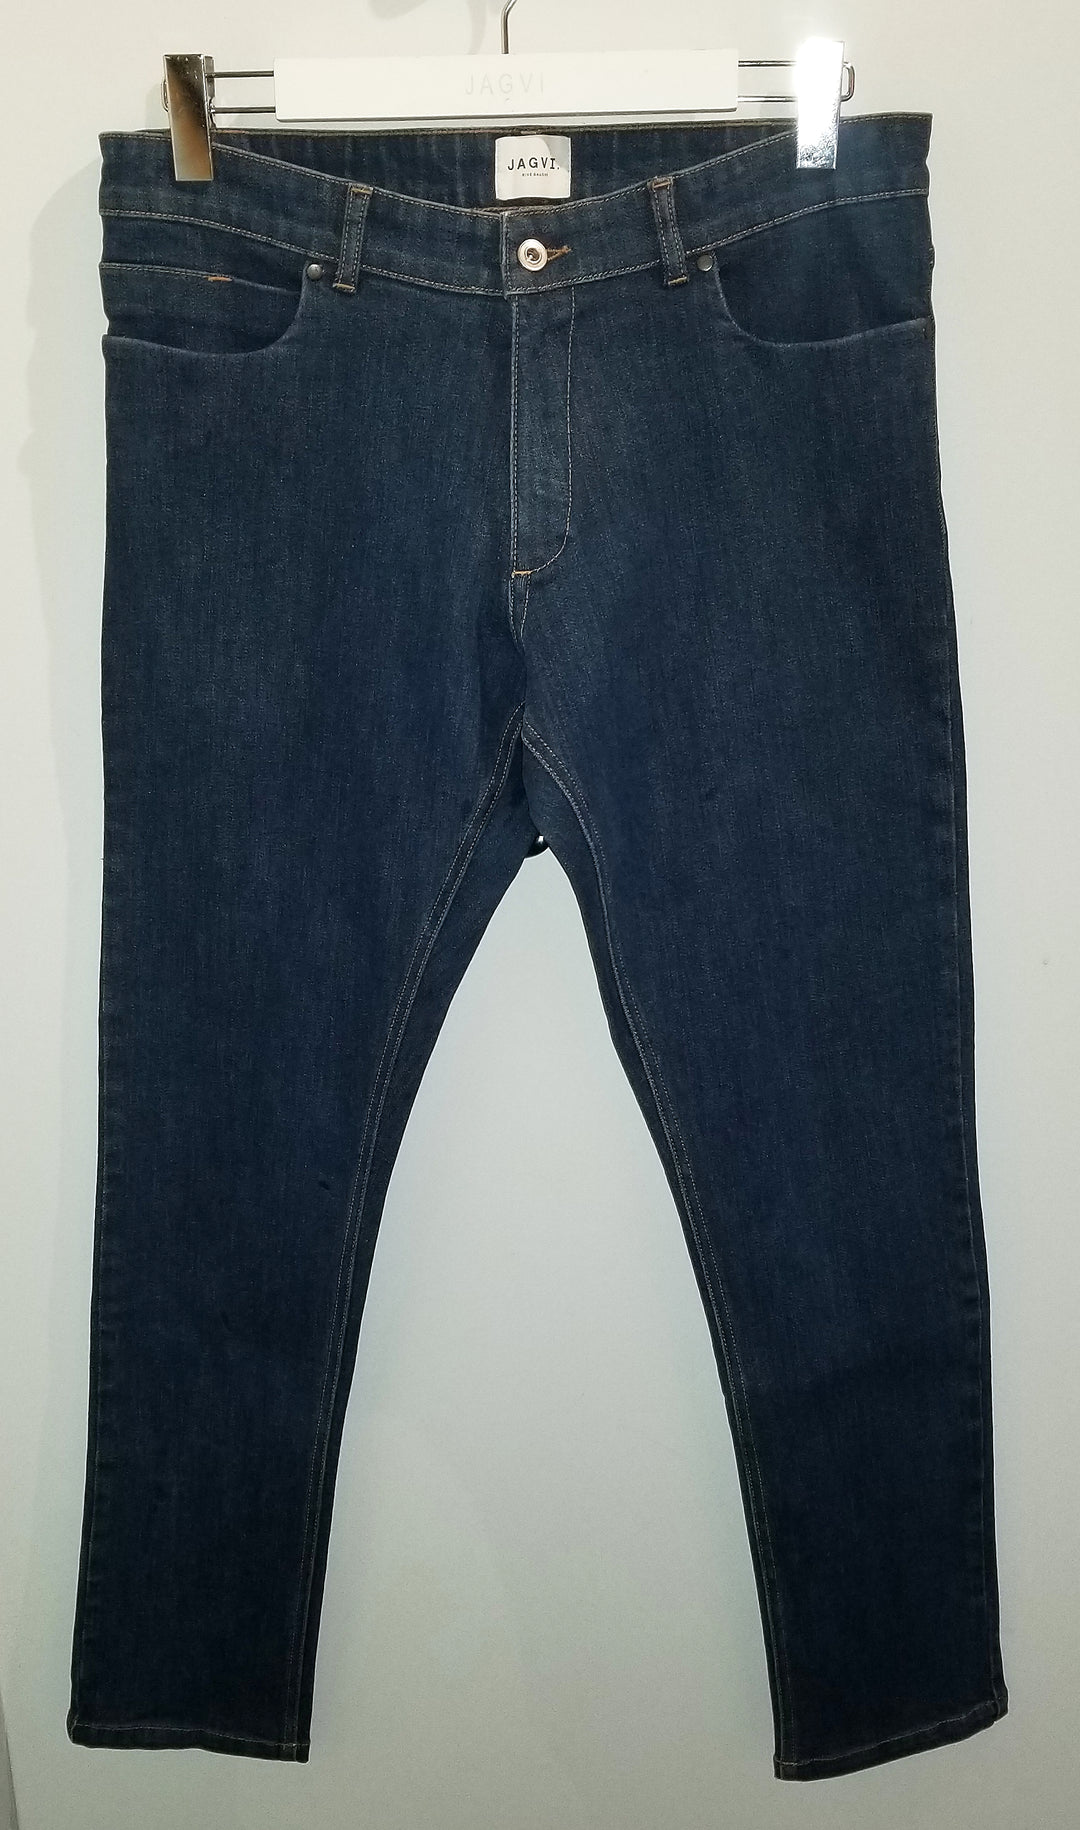 Japanese denim jeans